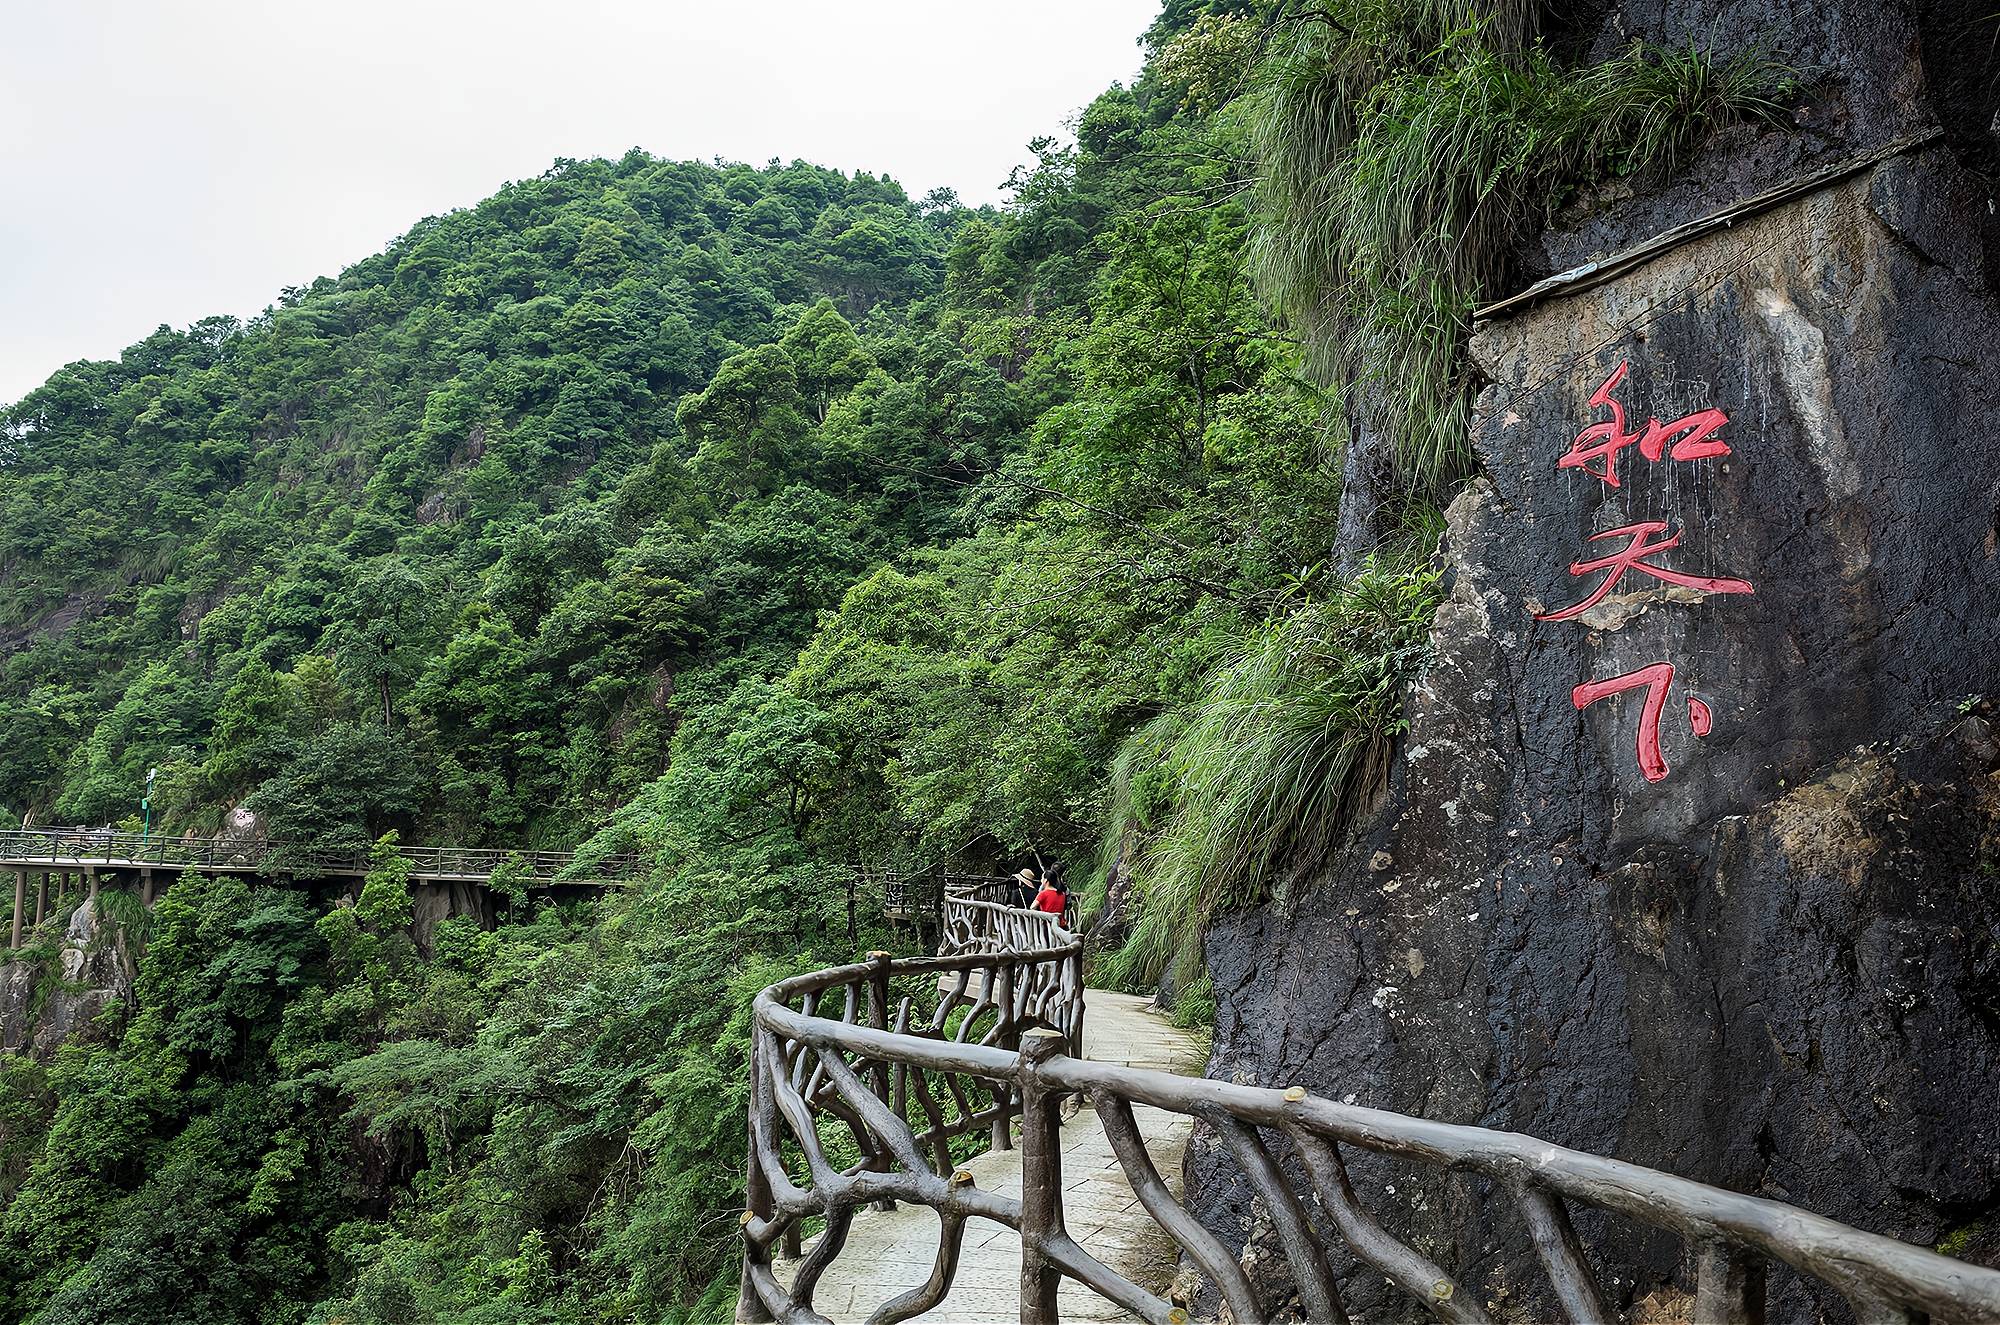 安远县有一处国家风景名胜区,为香港同胞饮用水源头,你去过吗?